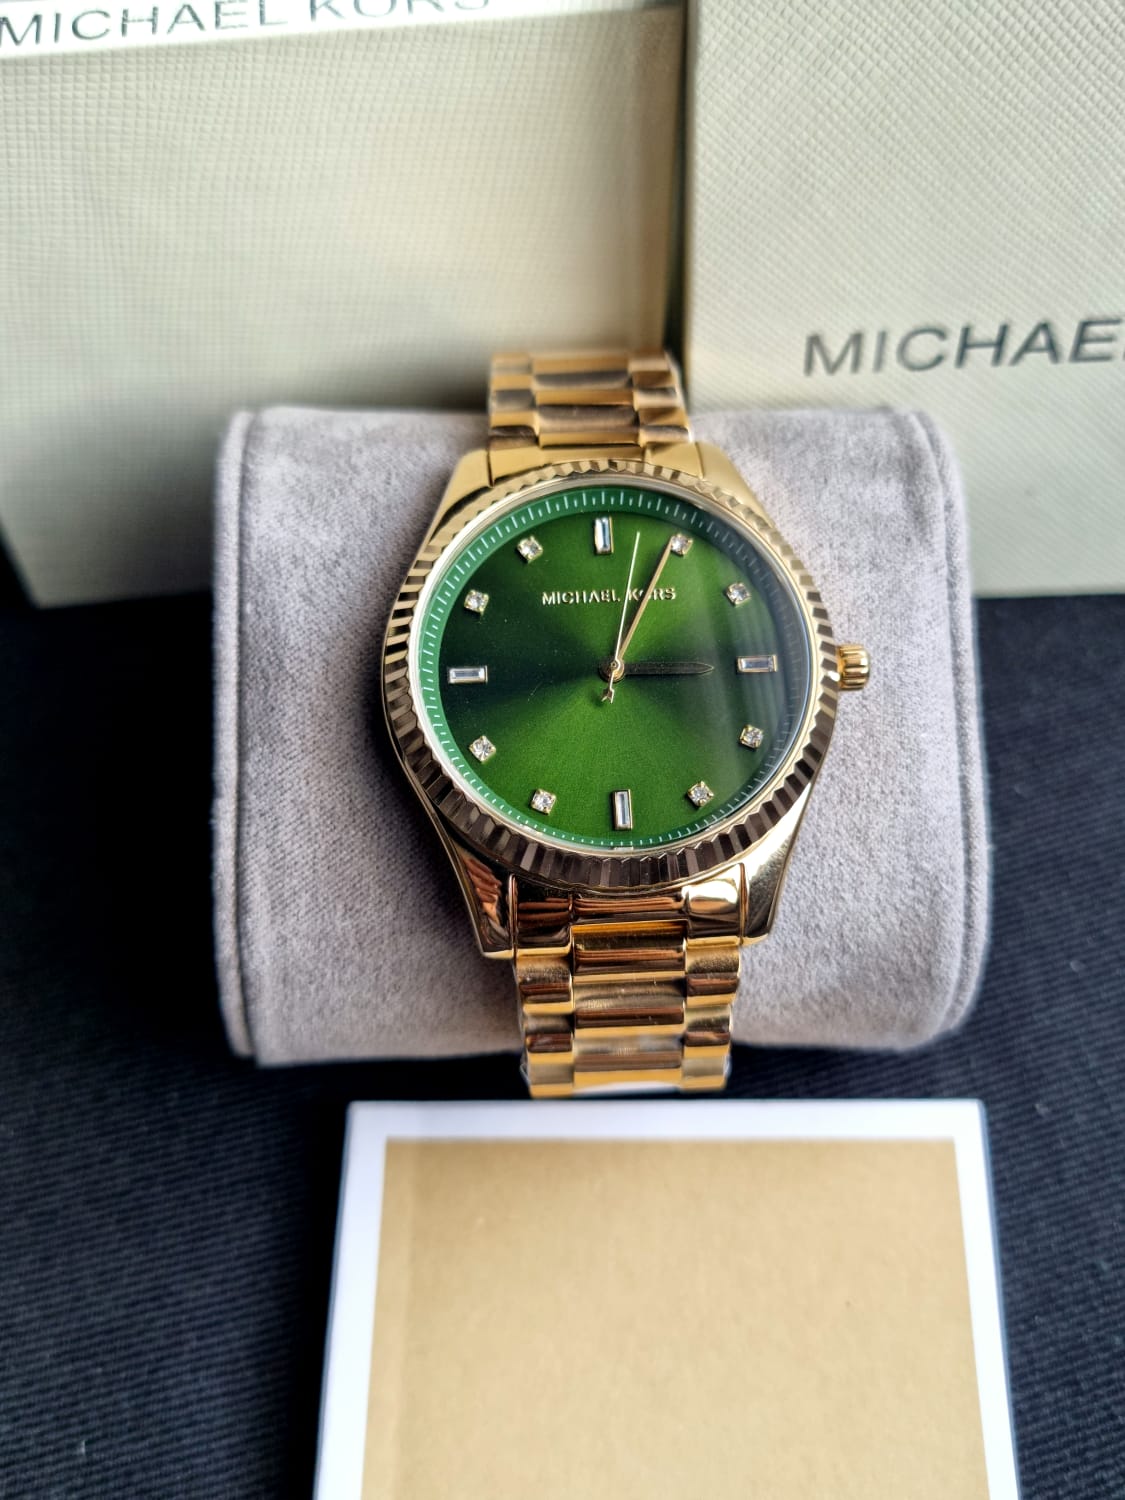 Michael Kors Women’s Quartz Gold Stainless Steel Emerald Green Dial 42mm Watch MK3226